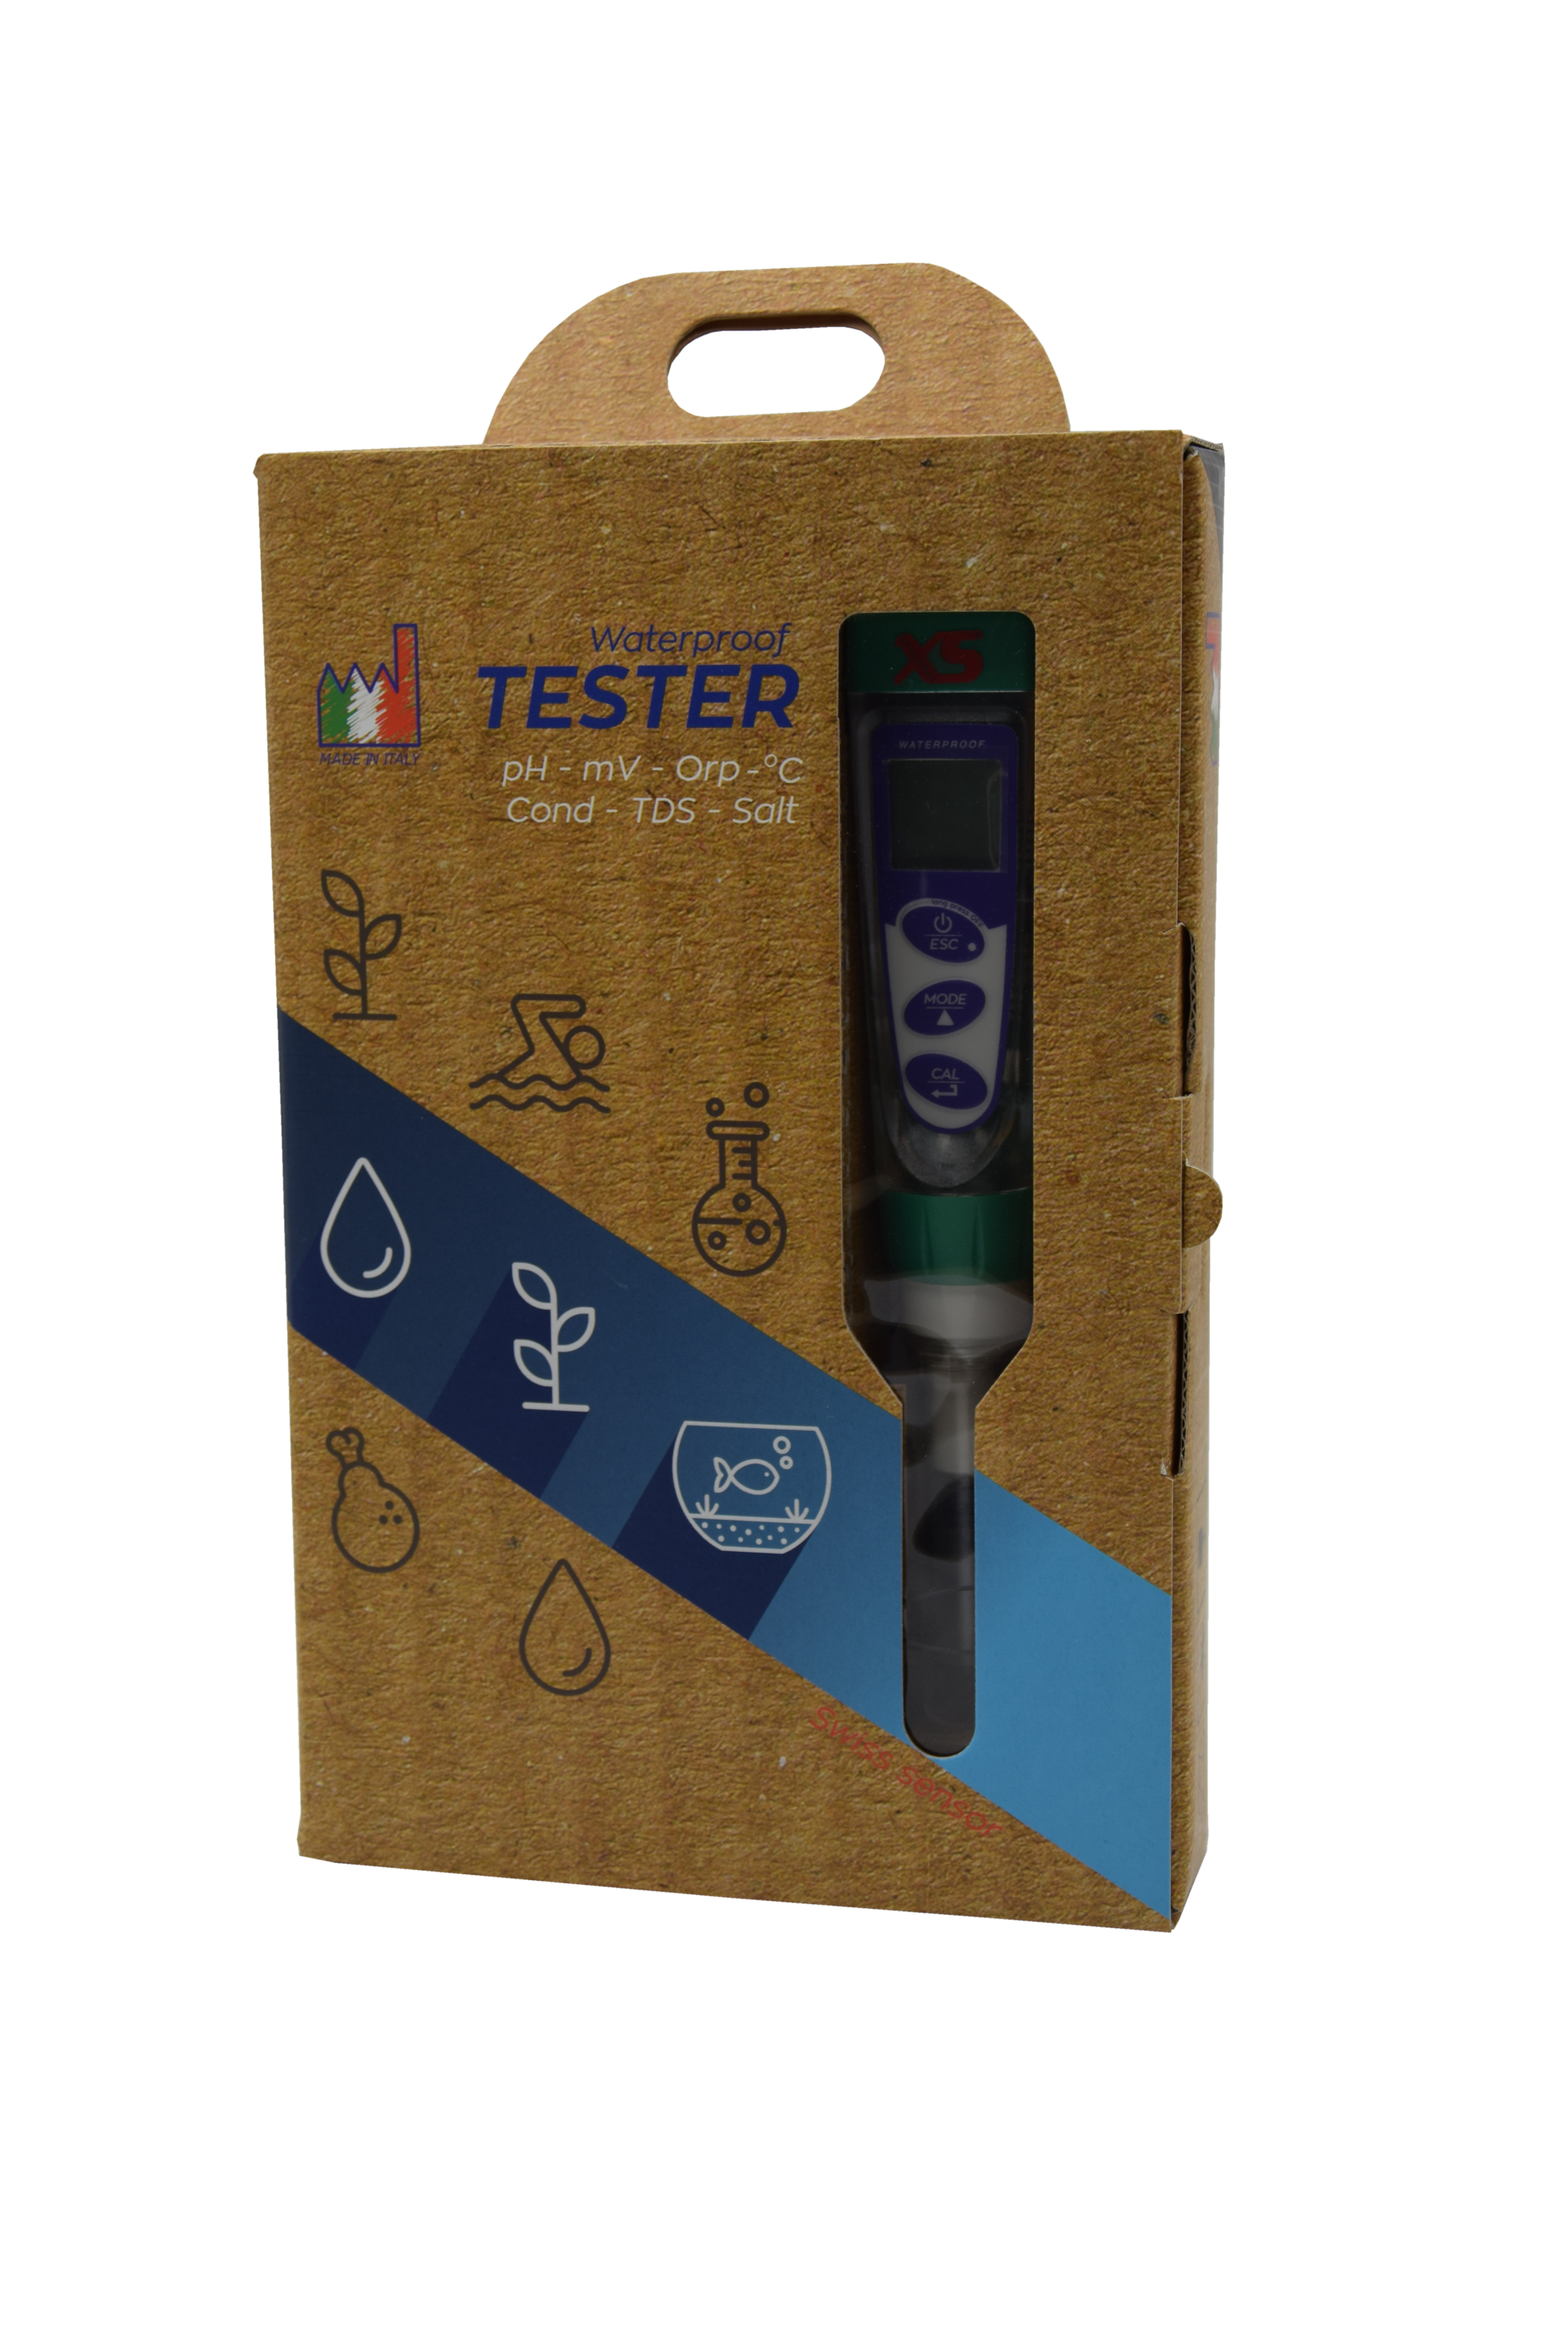 XS pH 5 Tester Kit - Handmessgerät zur Bestimmung des pH- Wertes und Temperatur